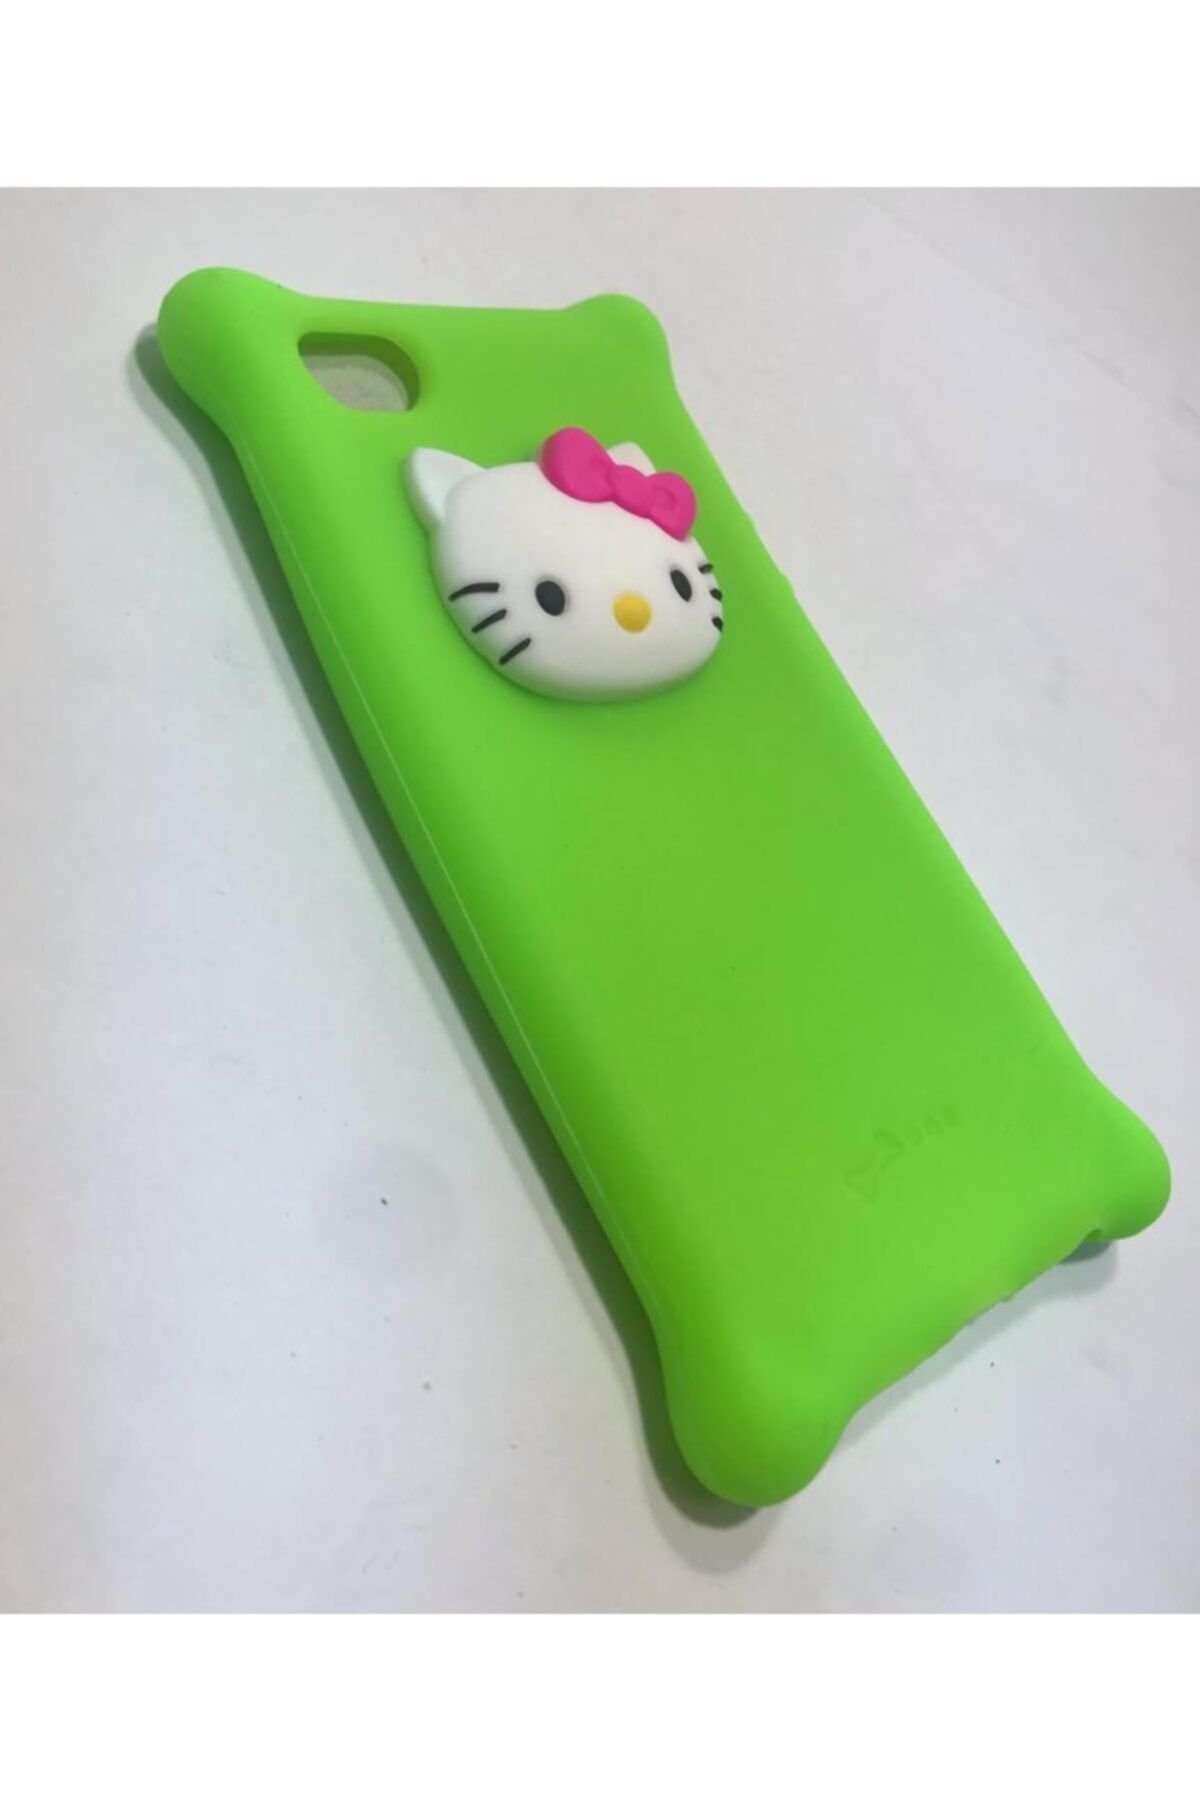 Miscase Iphone 5s Figürlü 3d Süper Silikon Kılıf Fıstık Yeşil Hello